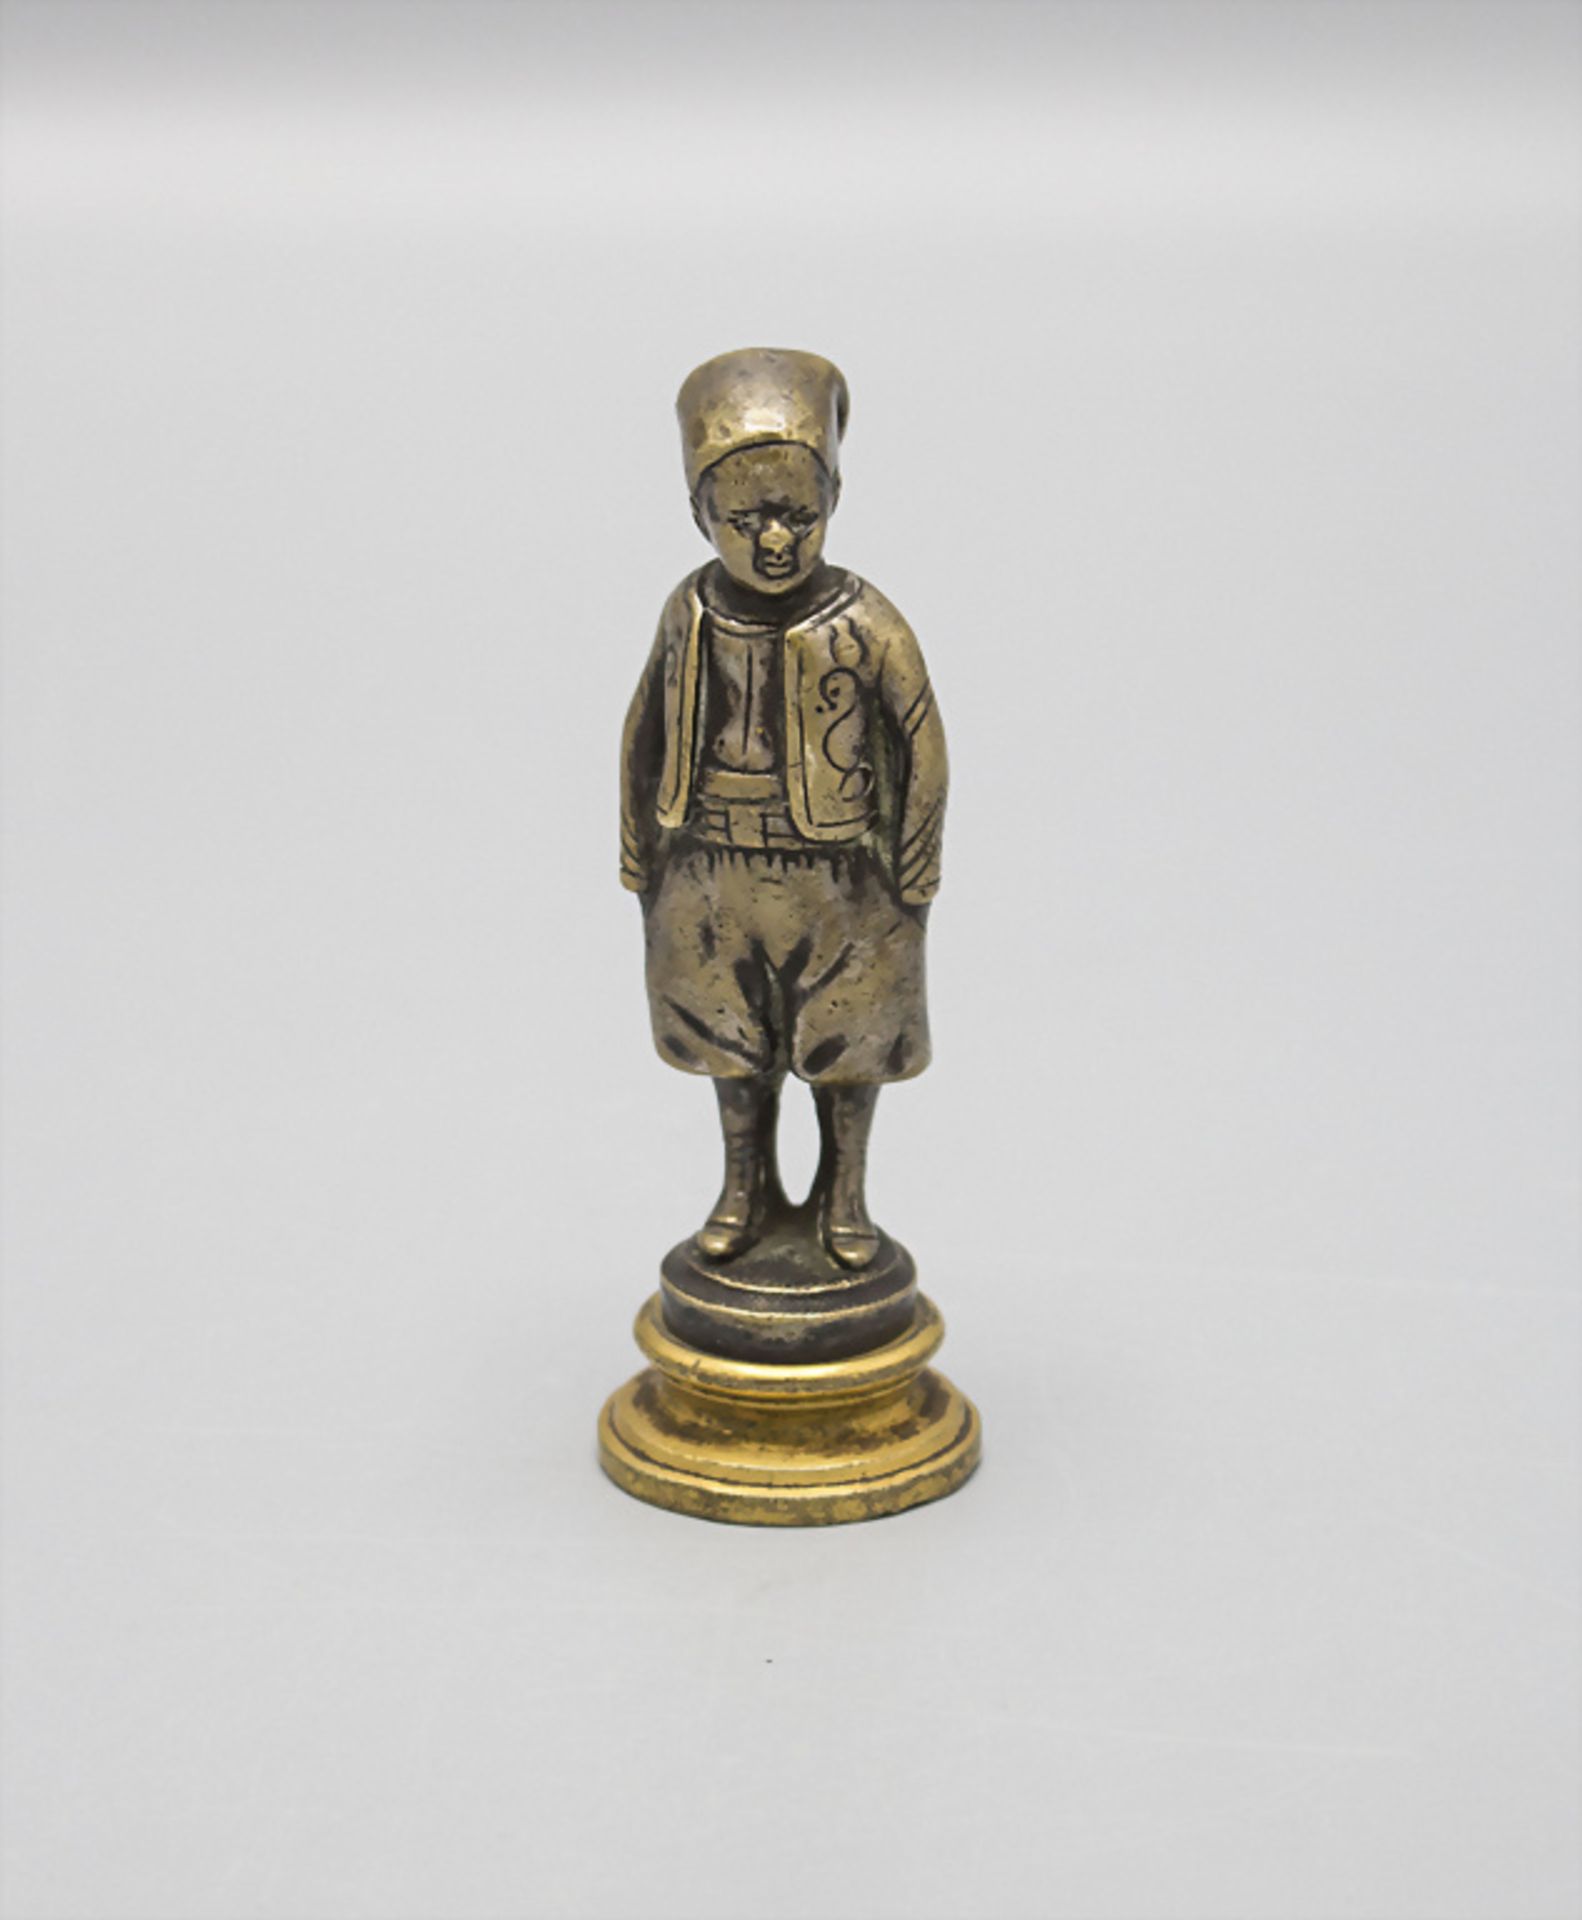 Miniatur Bronzefigur 'junger Orientale mit Schwert' als Petschaft / A miniature bronze seal ...